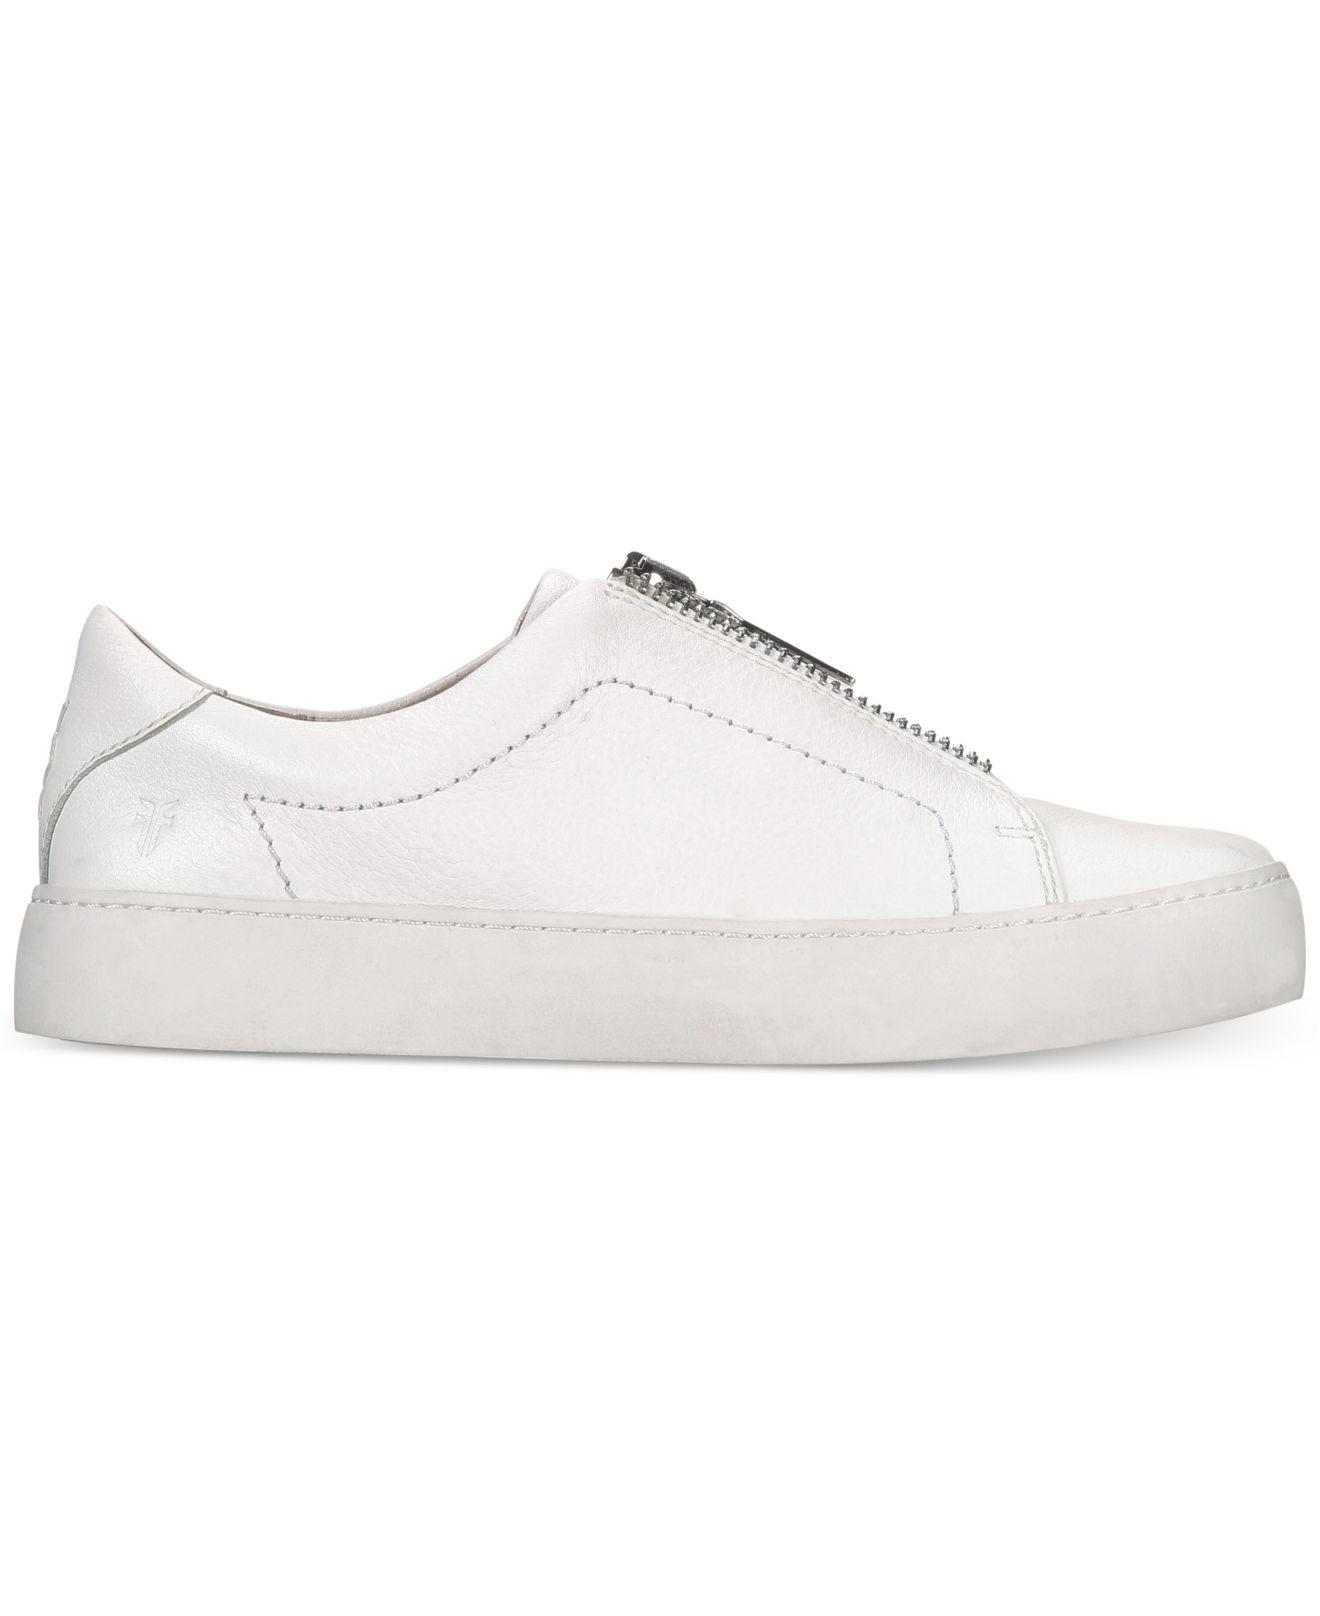 Frye Leather Lena Zipper Sneakers in White - Lyst